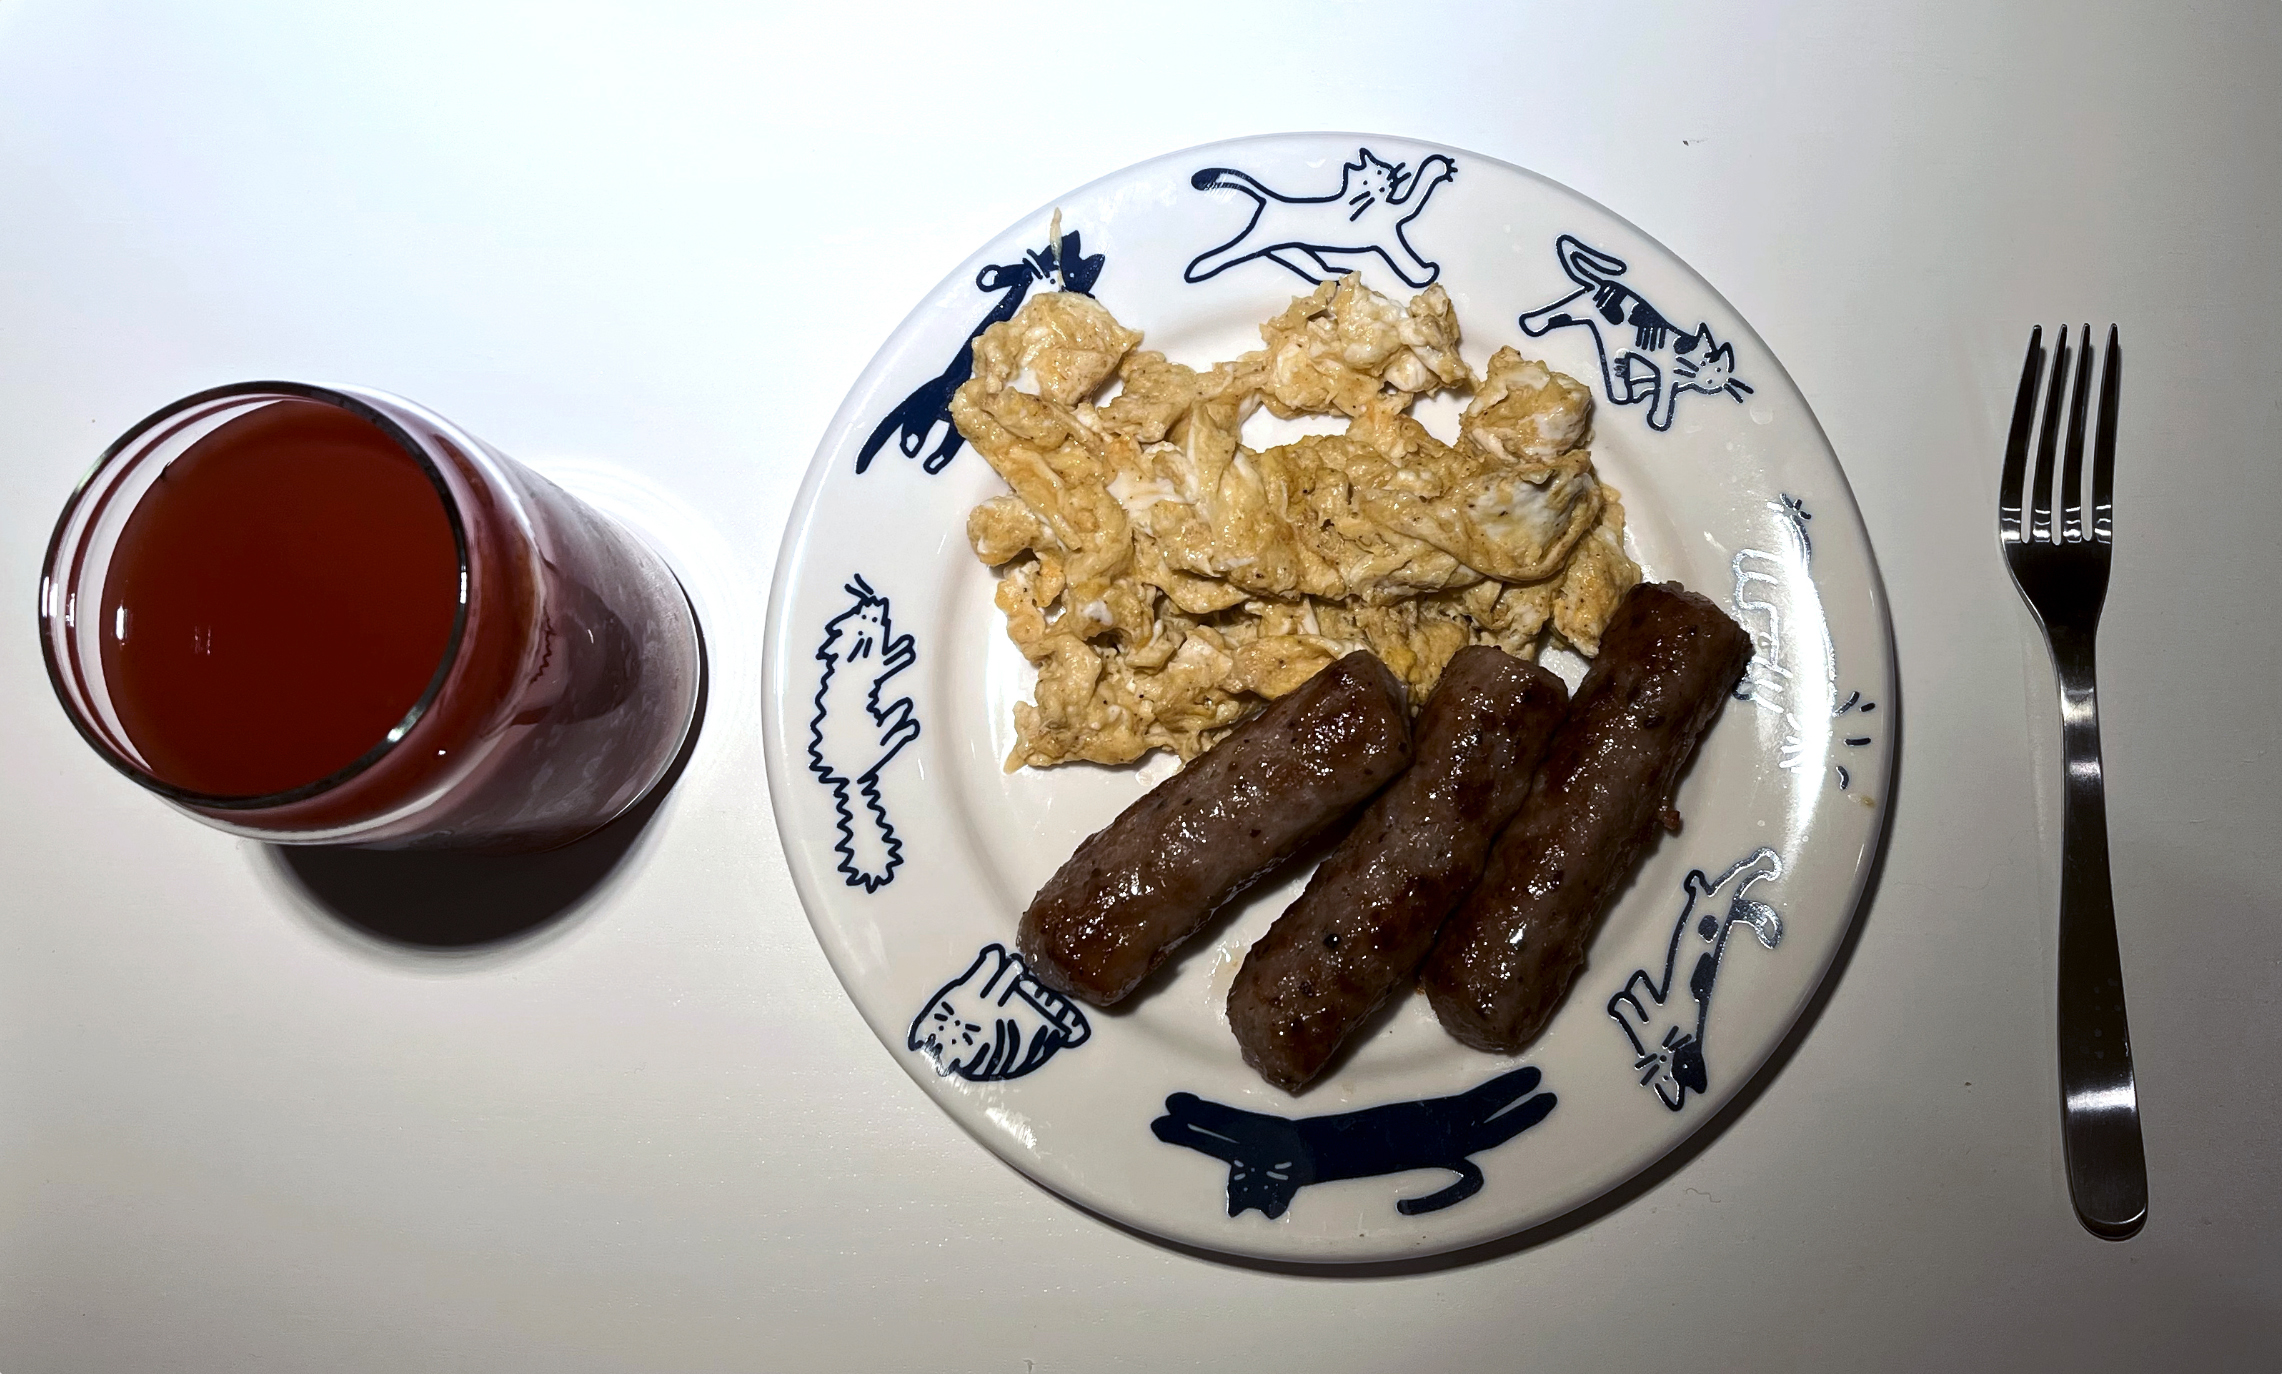 호즈미 접시에 아침밥 담은 사진